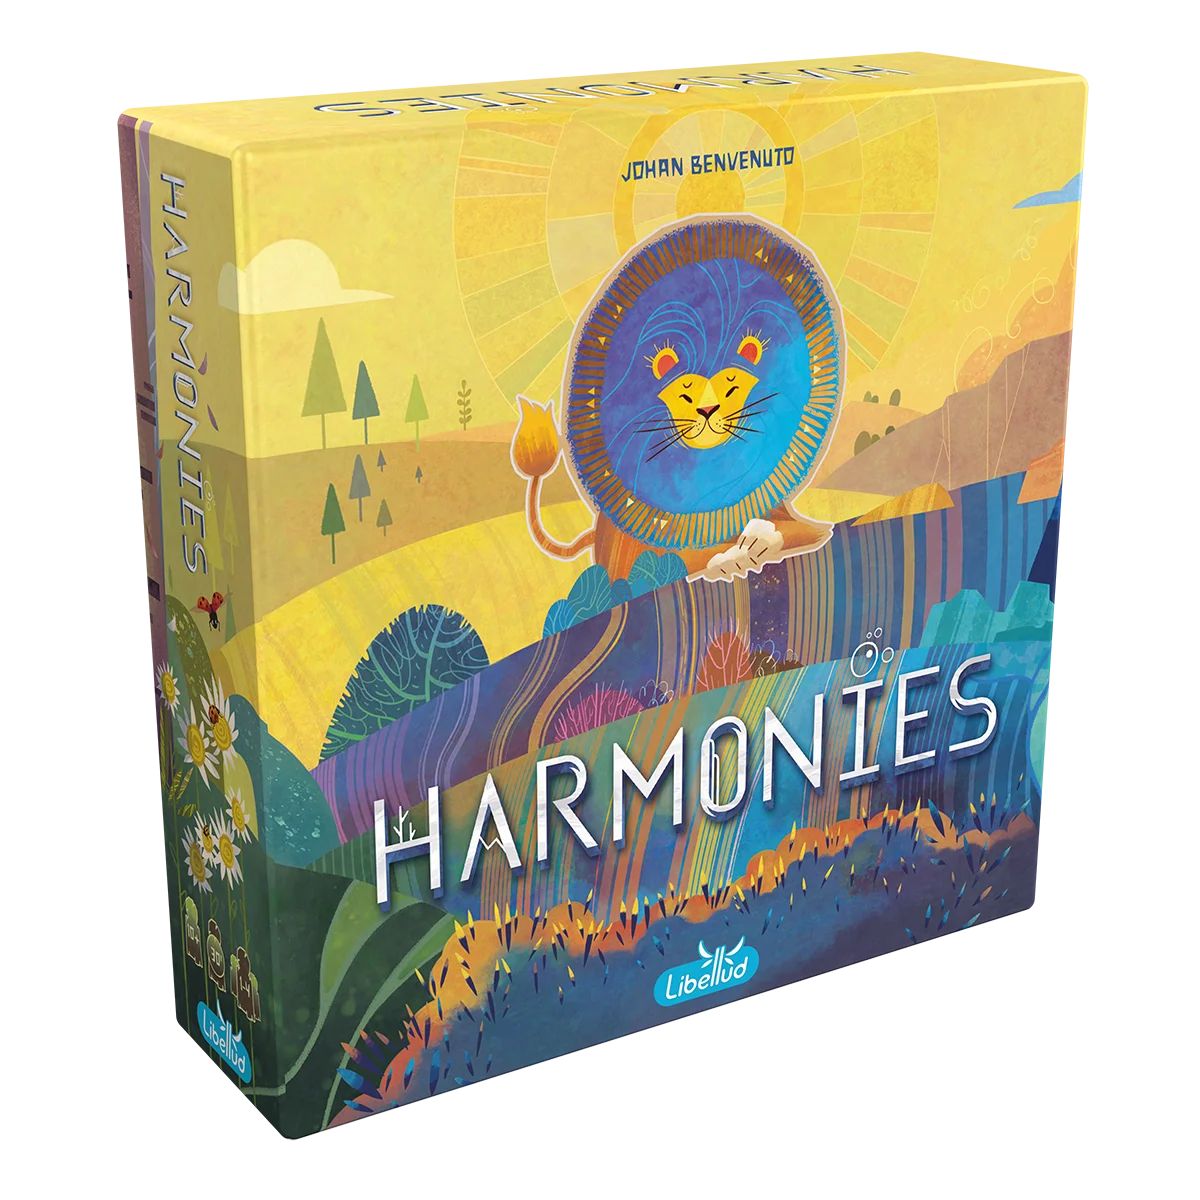 Preorder - Harmonies - DE